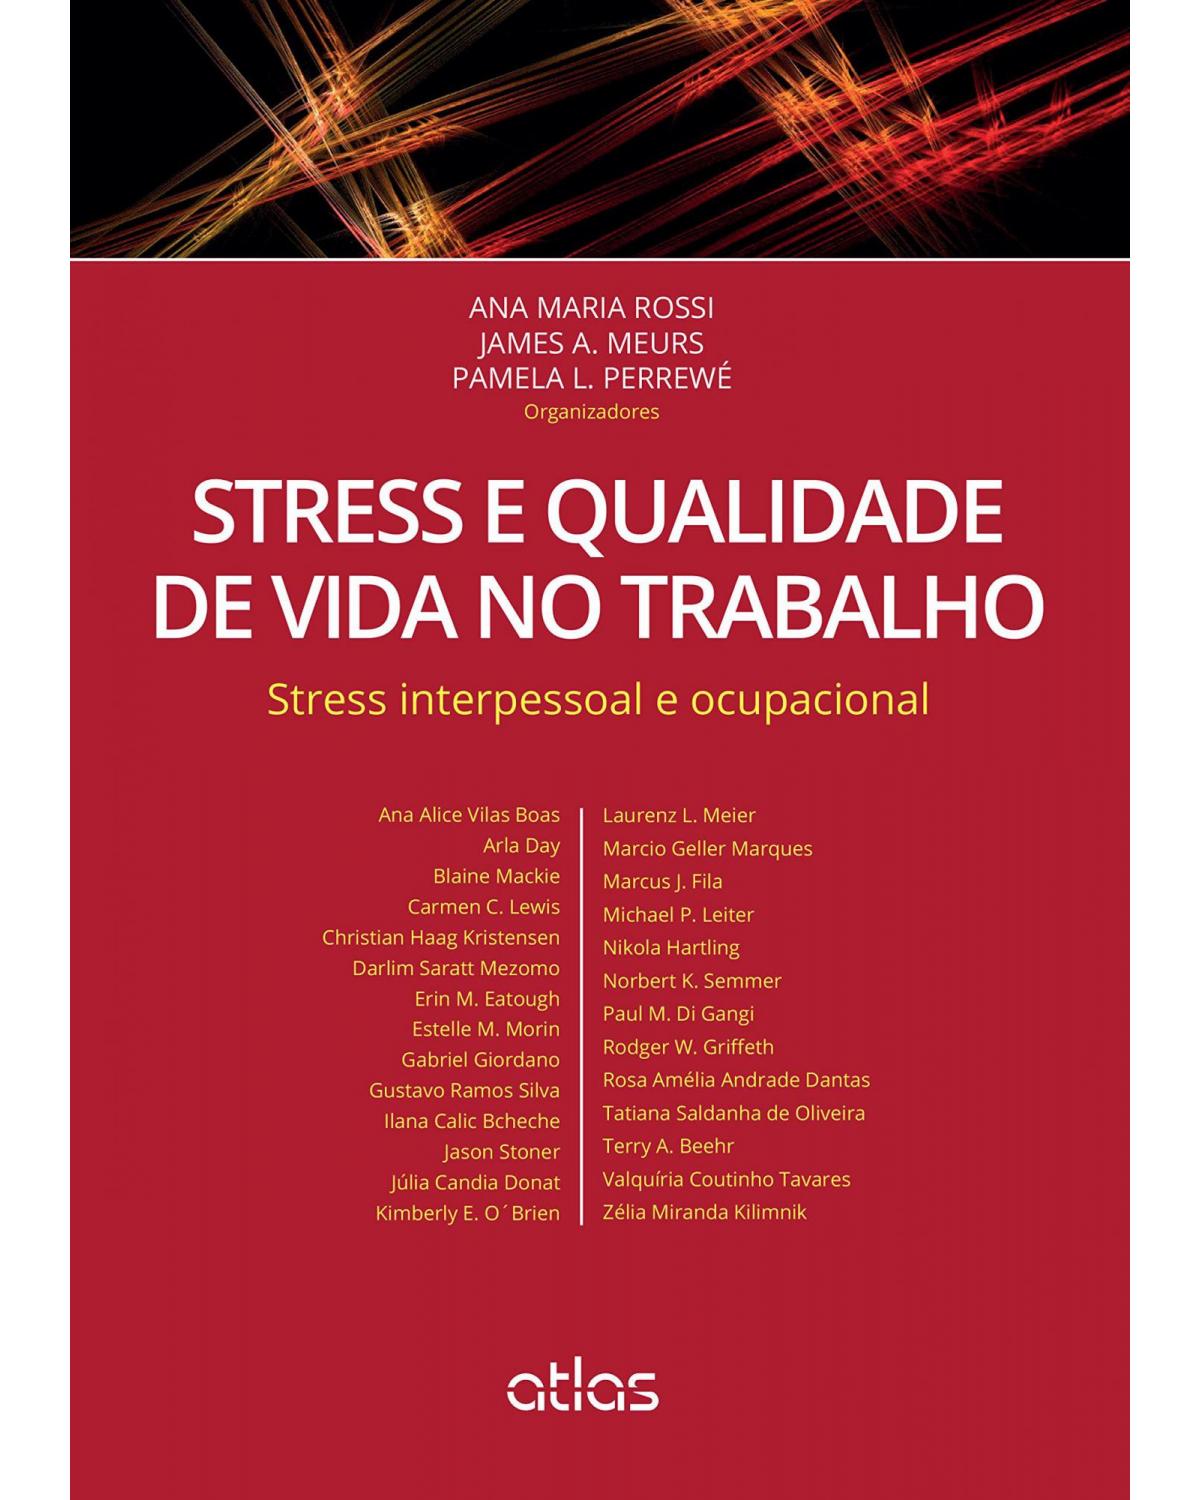 Stress e qualidade de vida no trabalho - Stress interpessoal e ocupacional - 1ª Edição | 2015